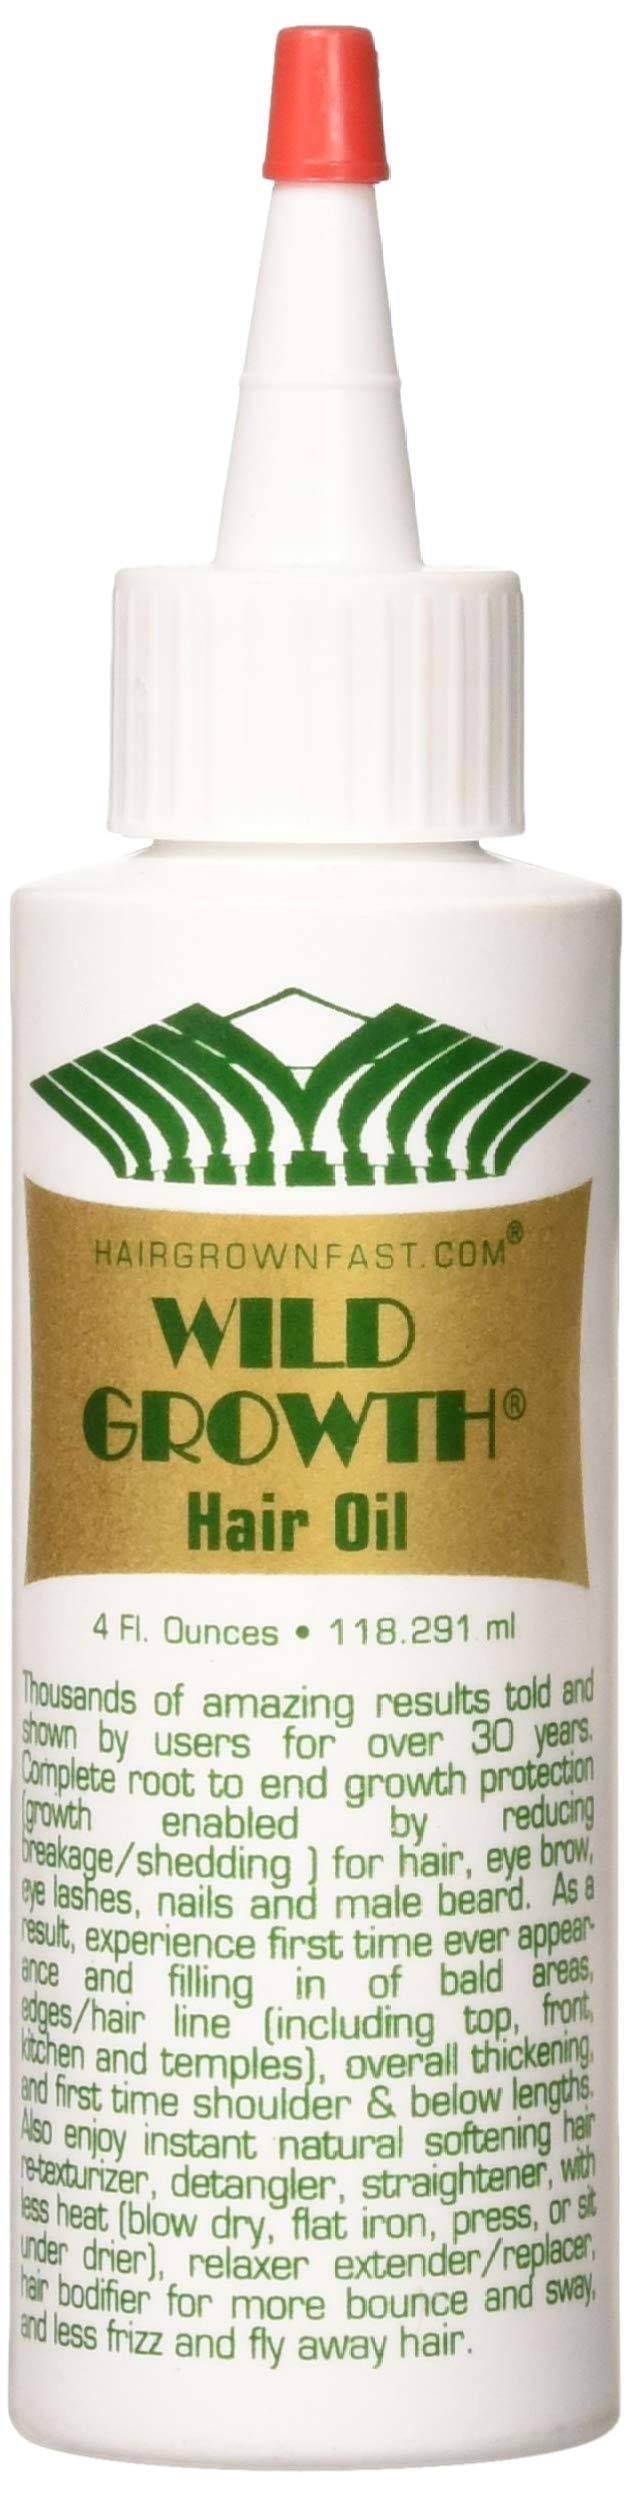 Wild Growth Hair Oil